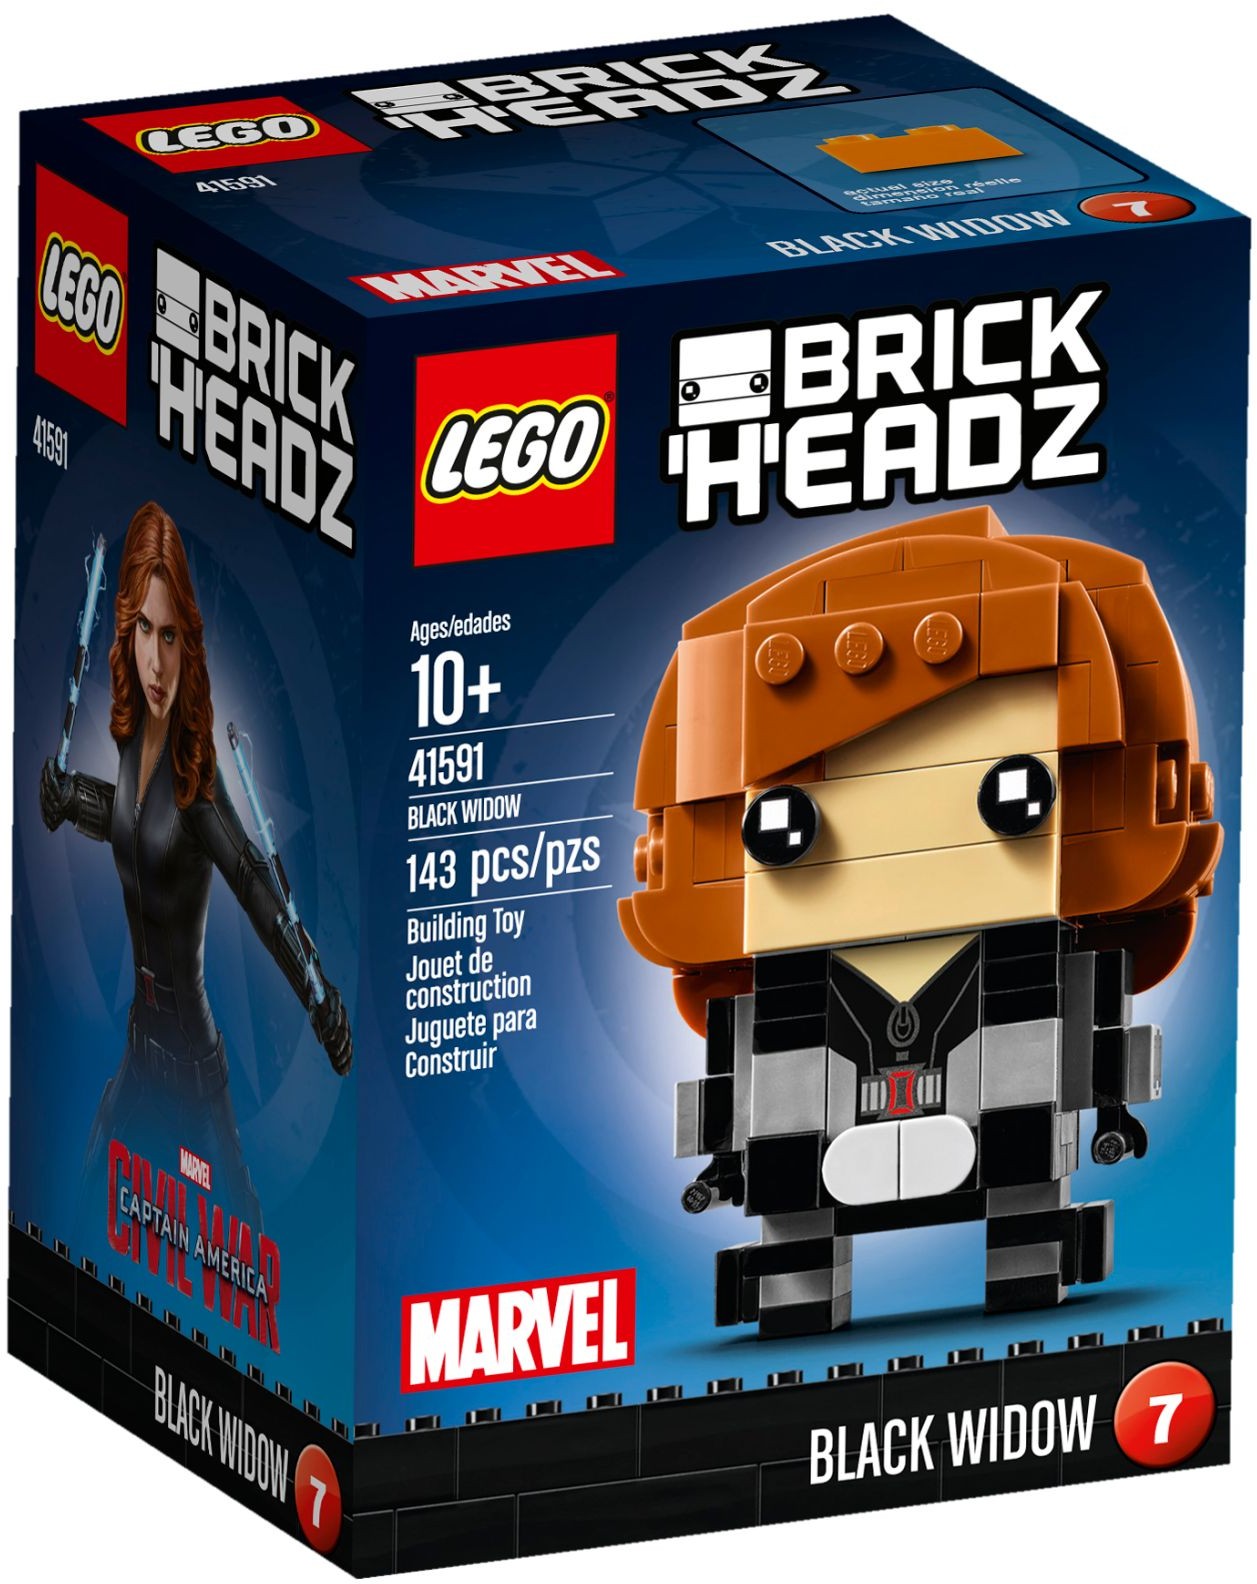 Lego Brickheadz 41591 - Black Widow